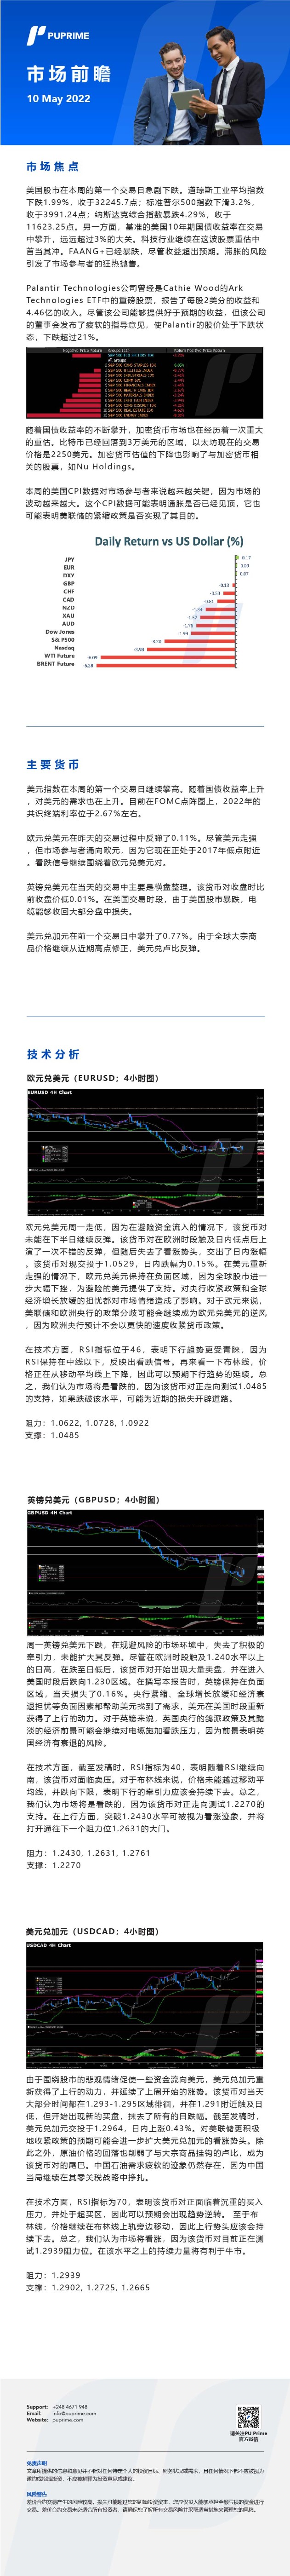 10052022 Daily Market Analysis__CHN.jpg